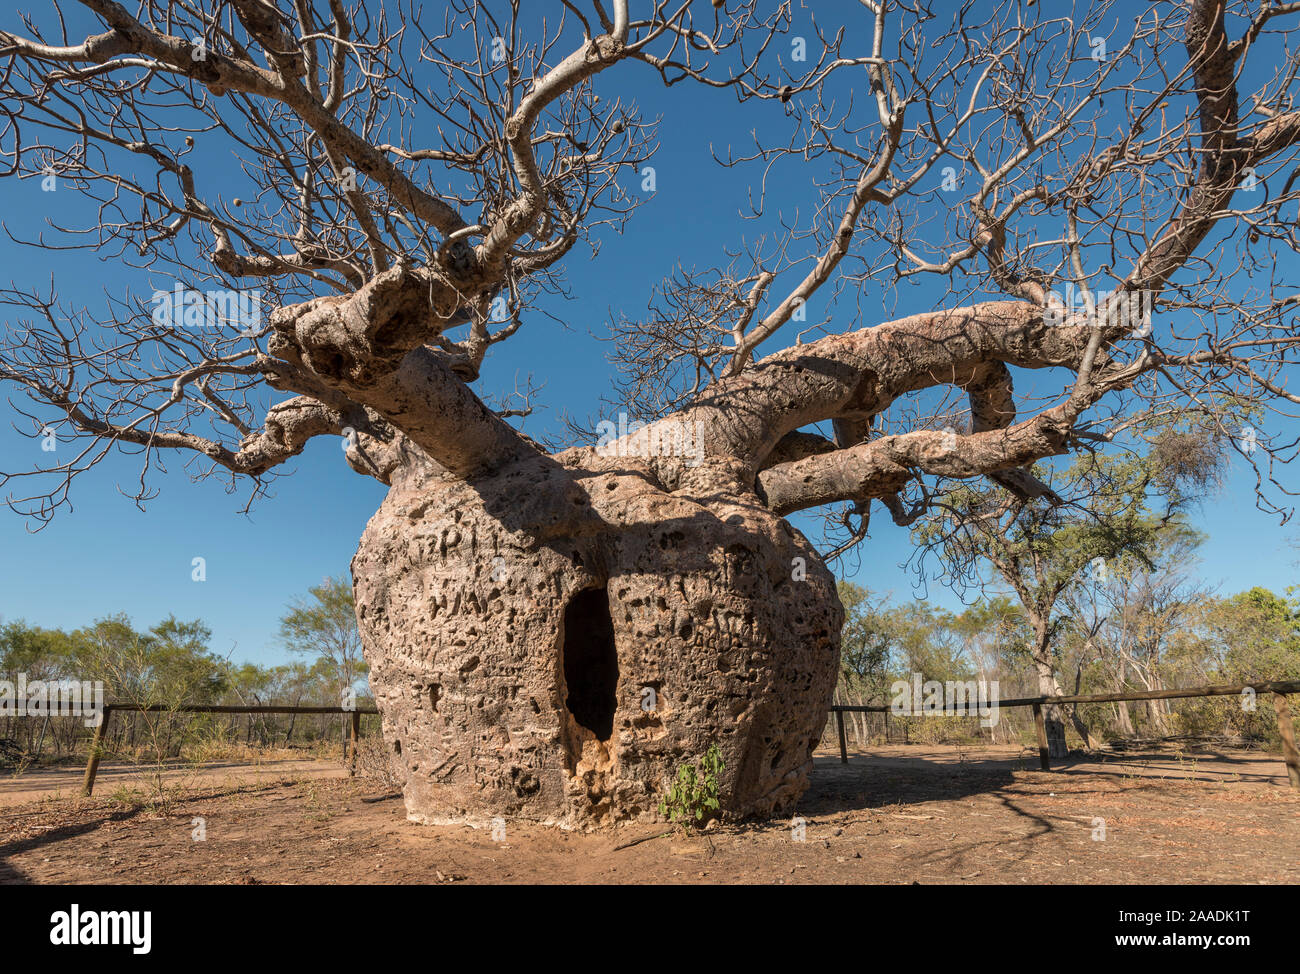 Die 'Gefängnis' Boab tree/australische Affenbrotbaum (Adansonia gregorii) mit dem Gefangenen zu sperren war, Wyndham. Kimberley, Western Australia. Juli 2016. Stockfoto